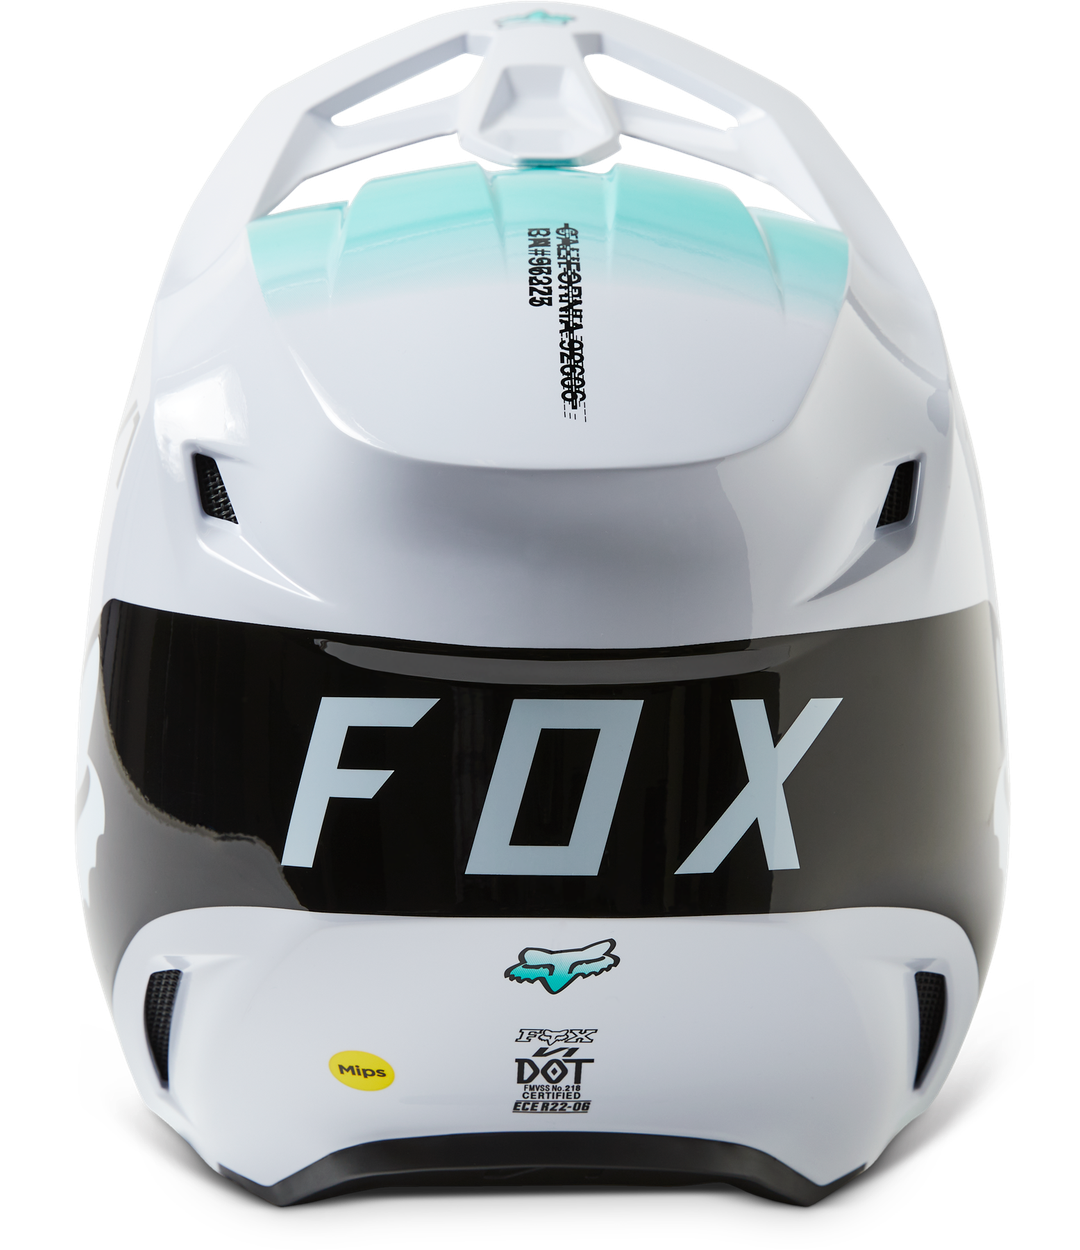 Casco Fox V1 Toxsyk